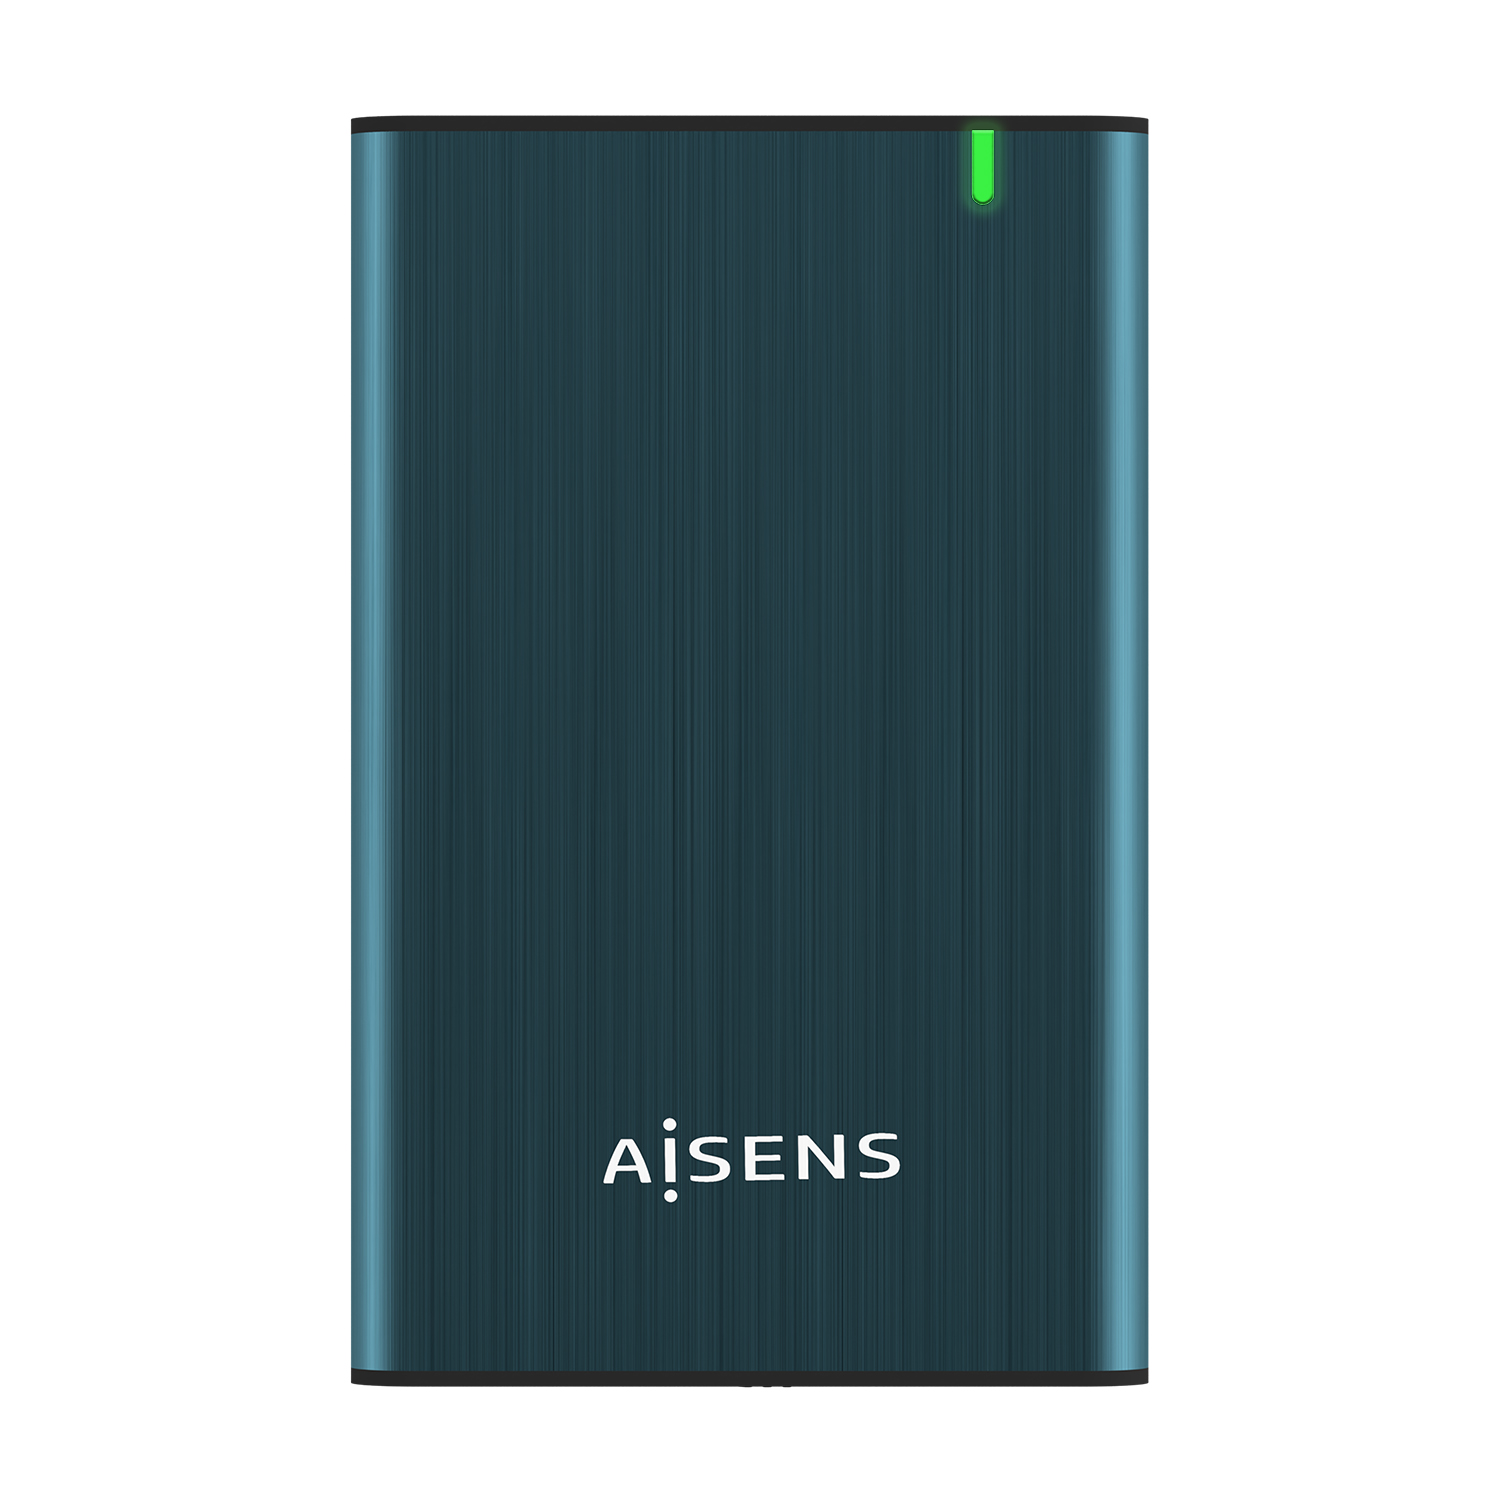 Boitier Externe Aisens 2.5 ? pour disques durs SATA I, II et III 9,5 mm vers USB 3.0/USB 3.1 GEN1 - Couleur bleu pacifique